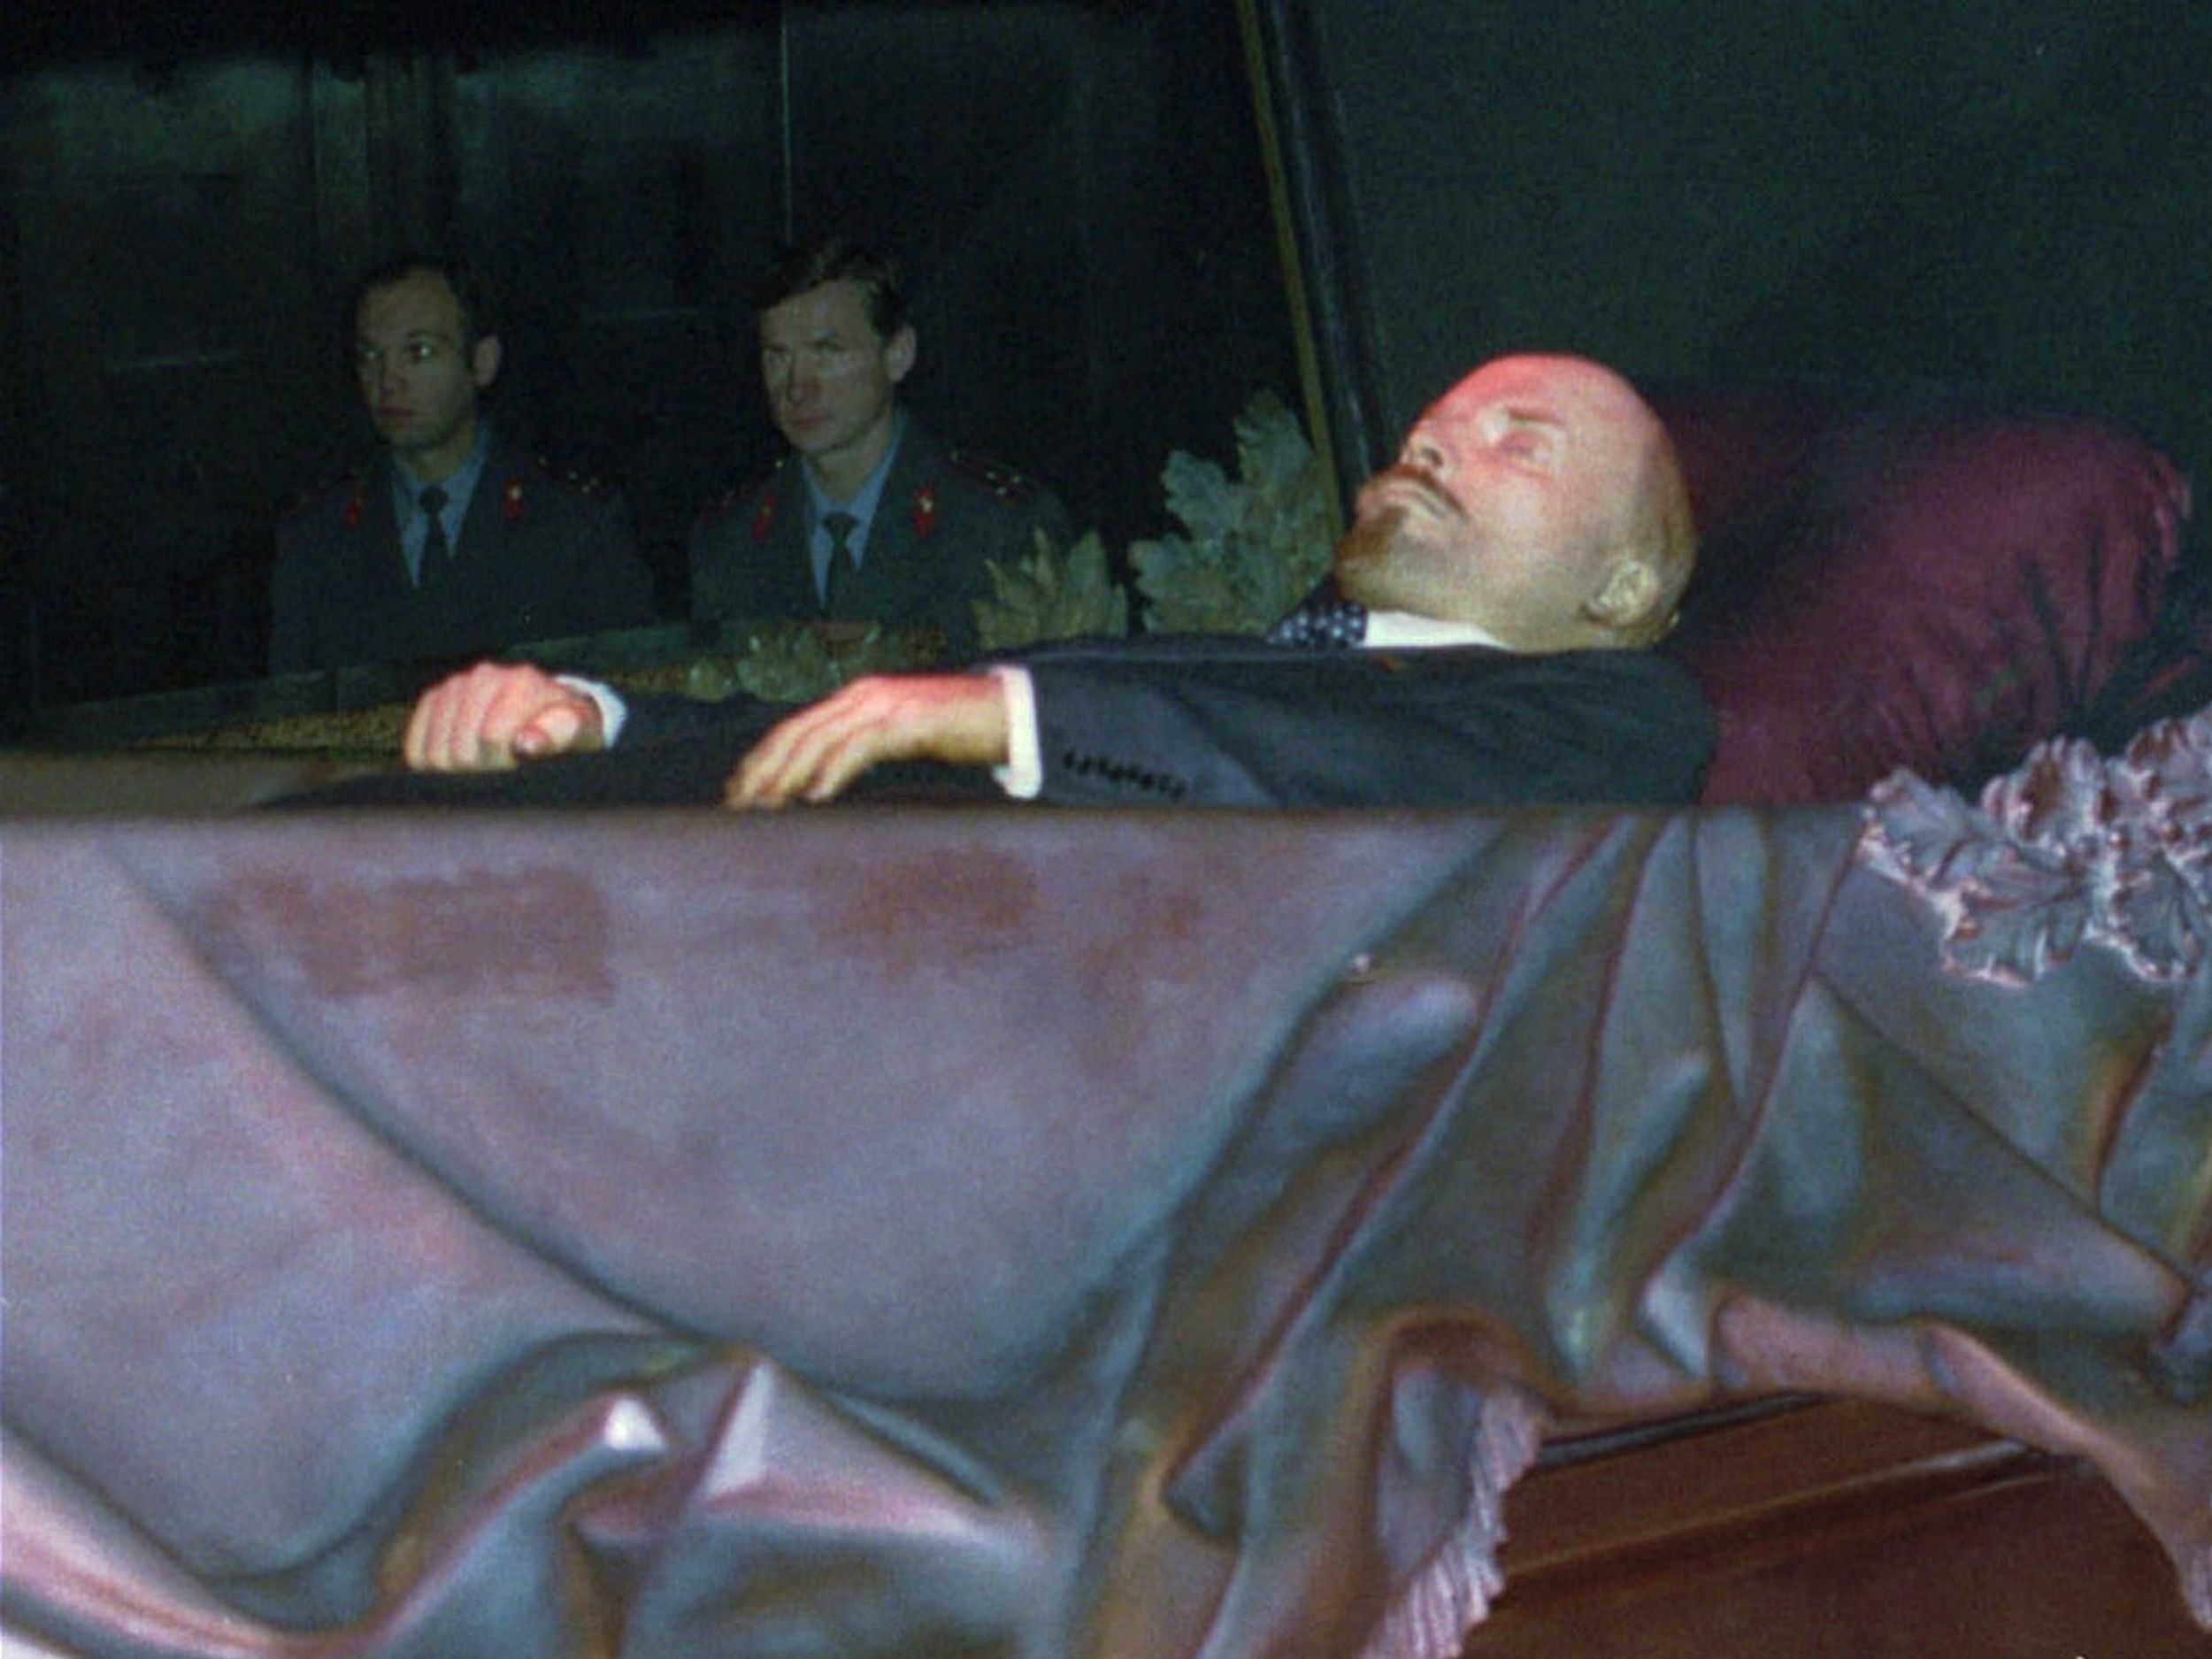 Ленин сталин в мавзолее фото